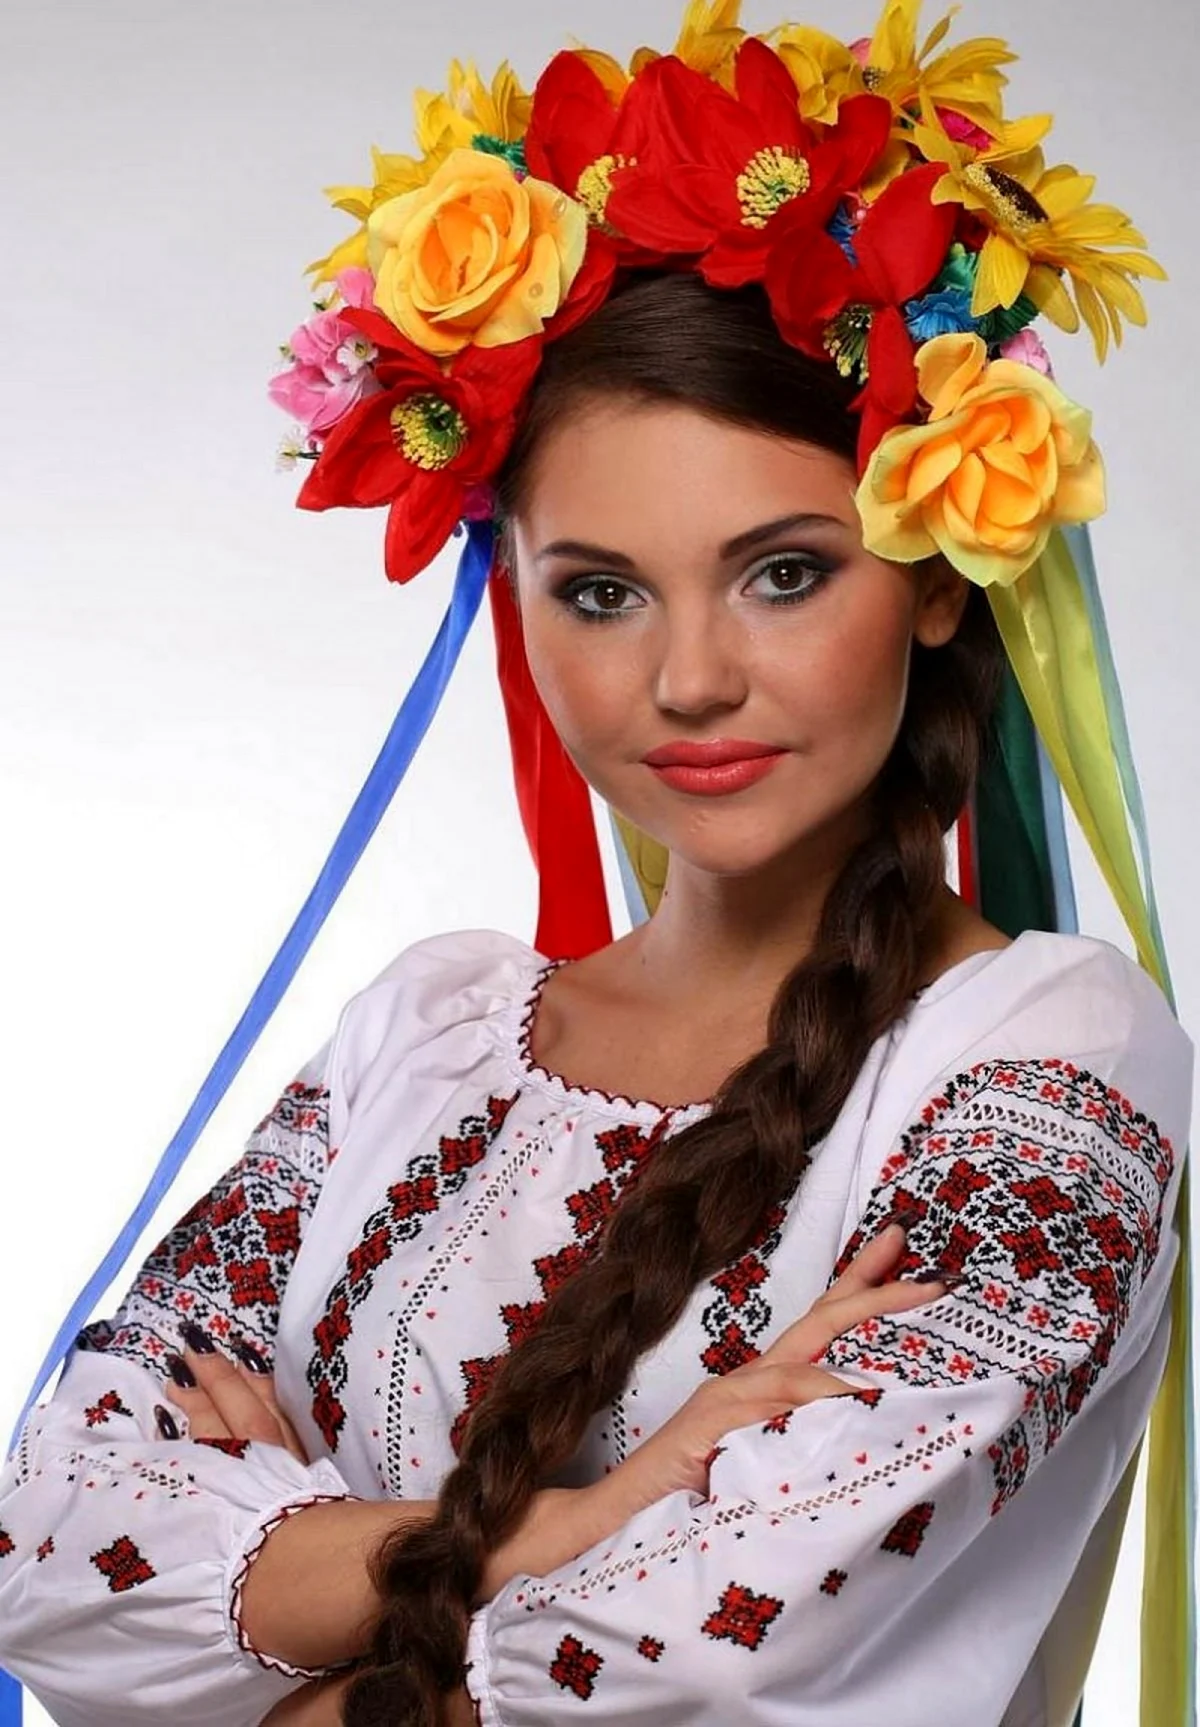 Эмилия Украинка модель. Красивая девушка